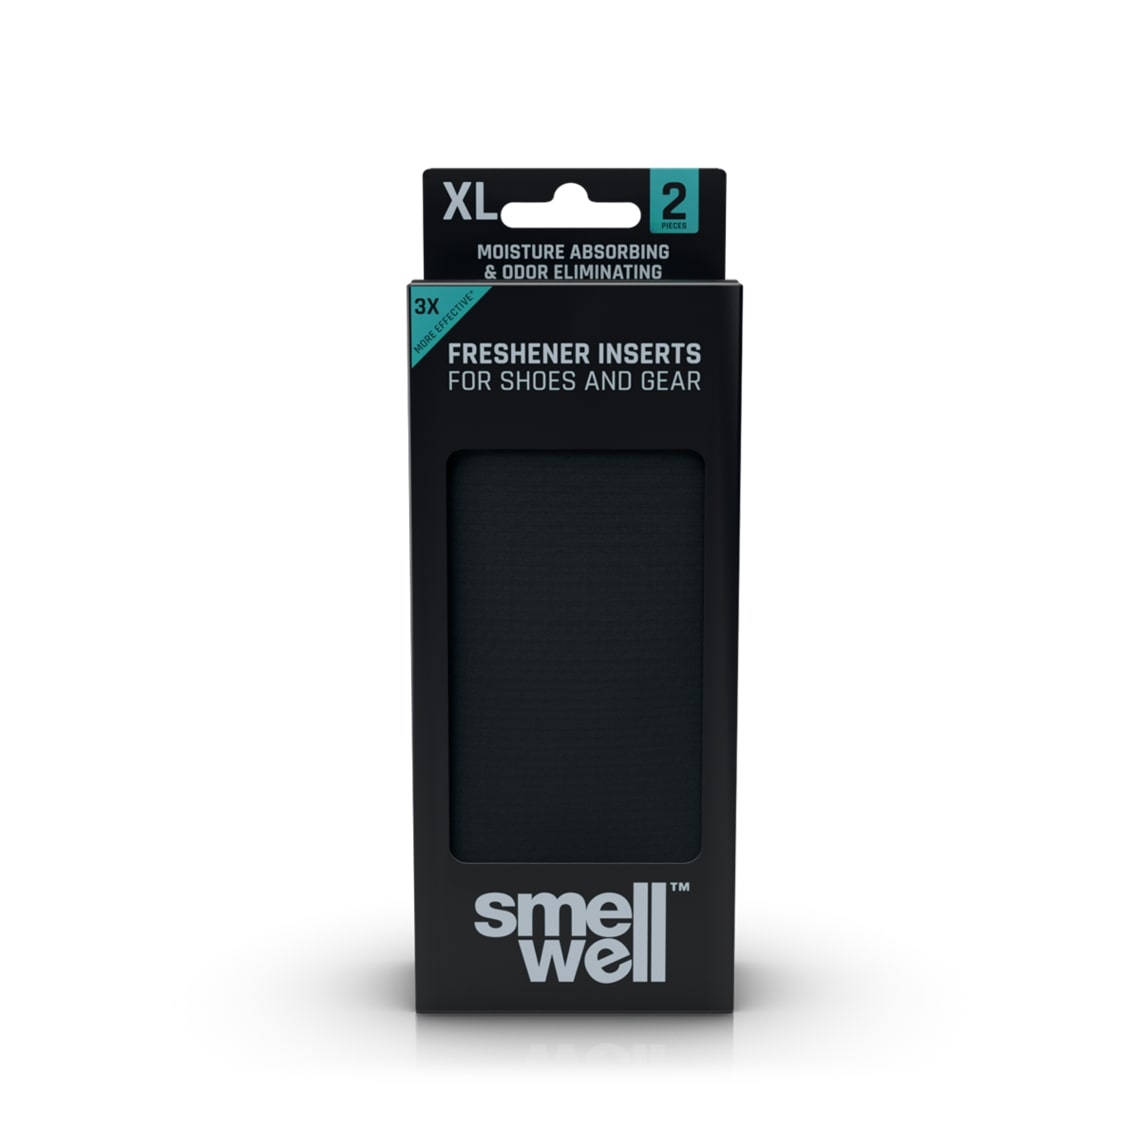 SmellWell XL